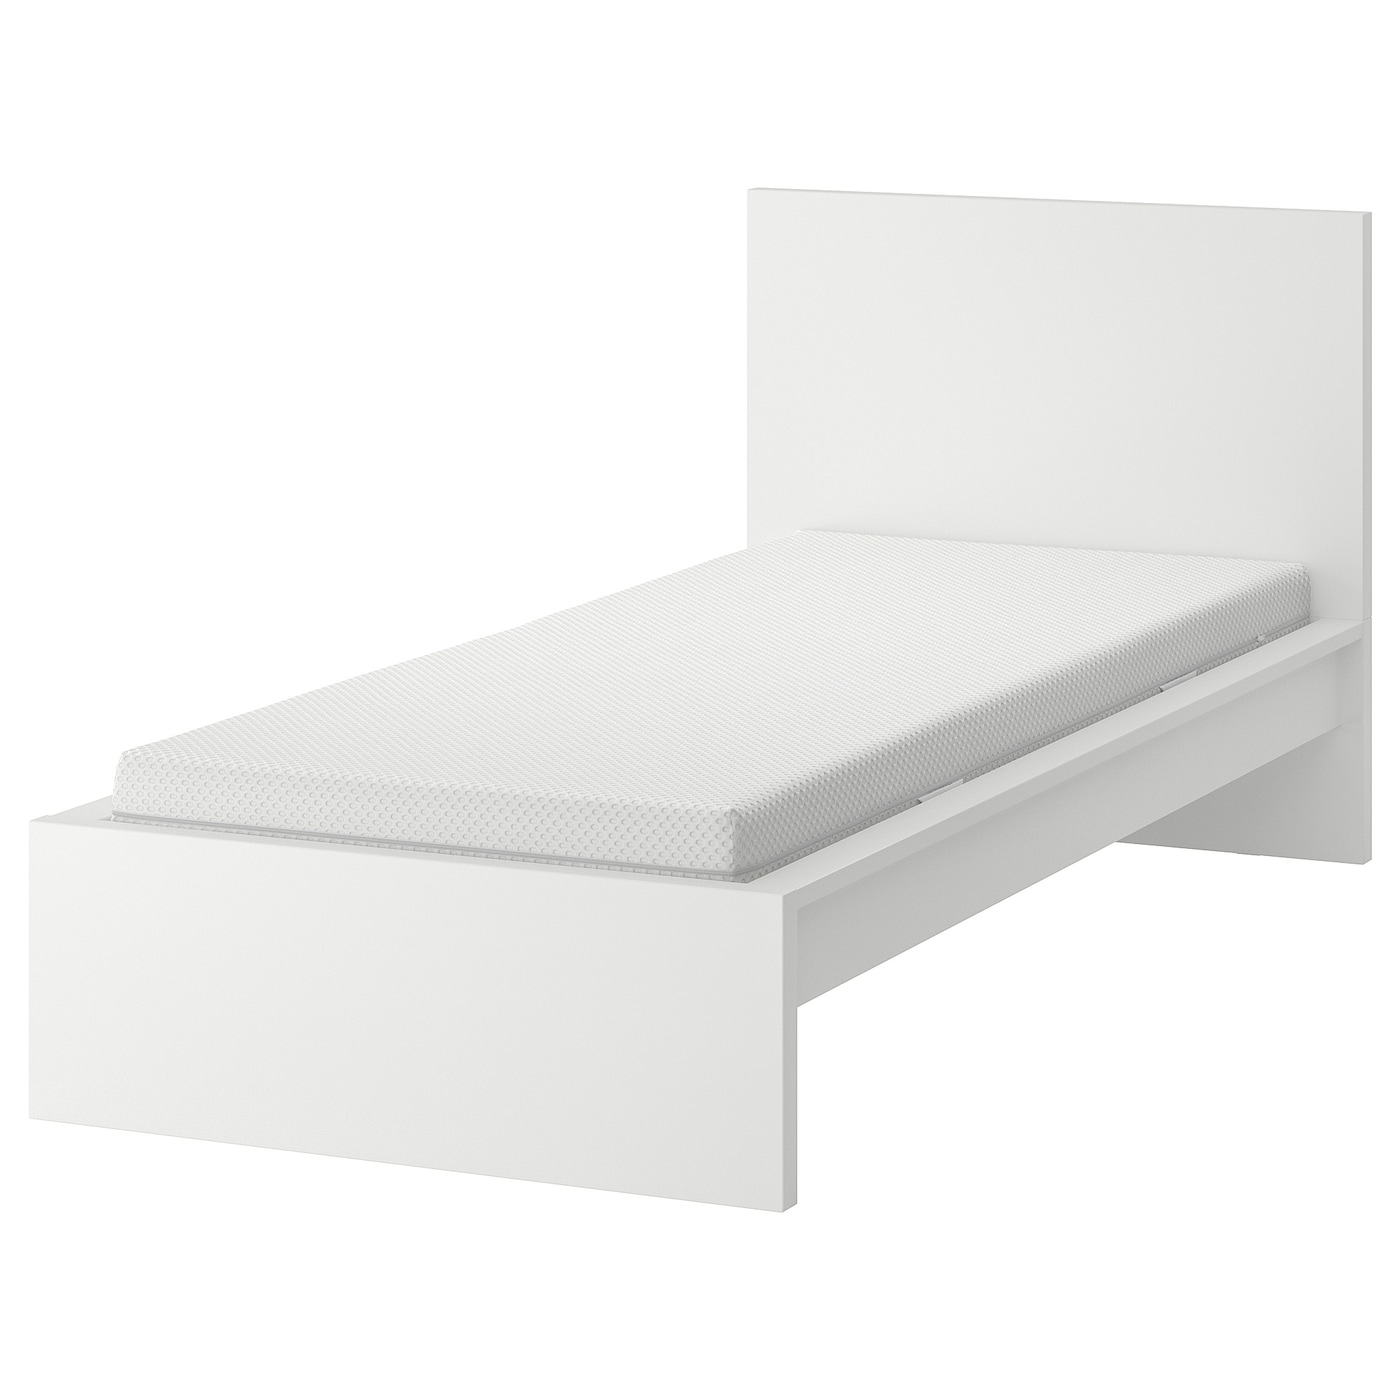 Кровать - IKEA MALM, 200х90 см, матрас жесткий, белый, МАЛЬМ ИКЕА